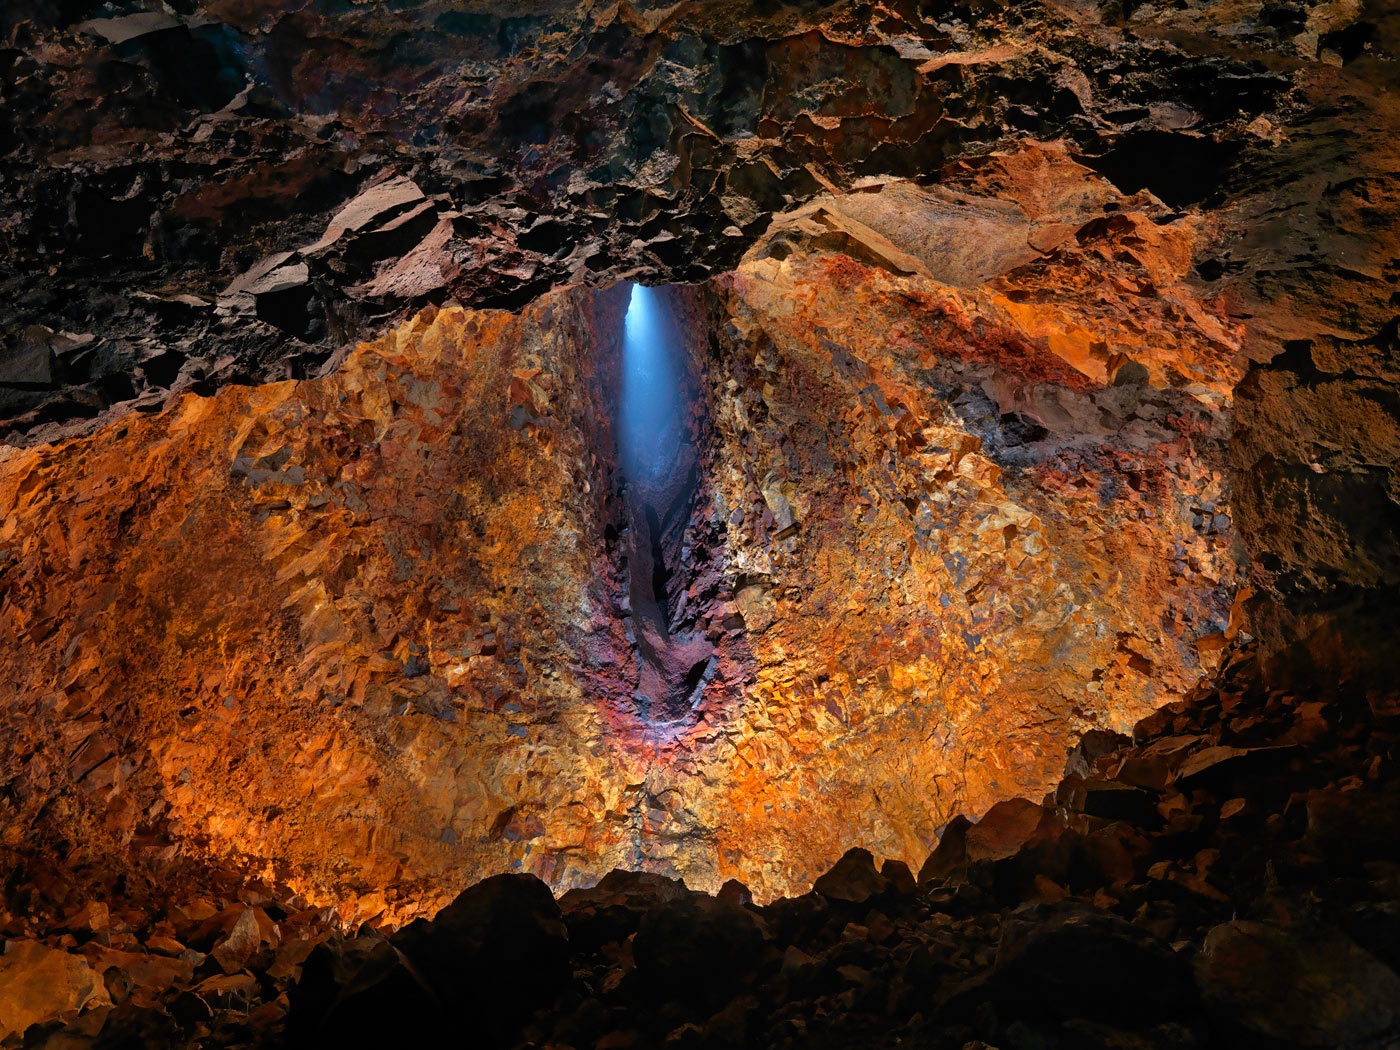 冰岛是世界上唯一一处可以进入火山内部探险的地方。